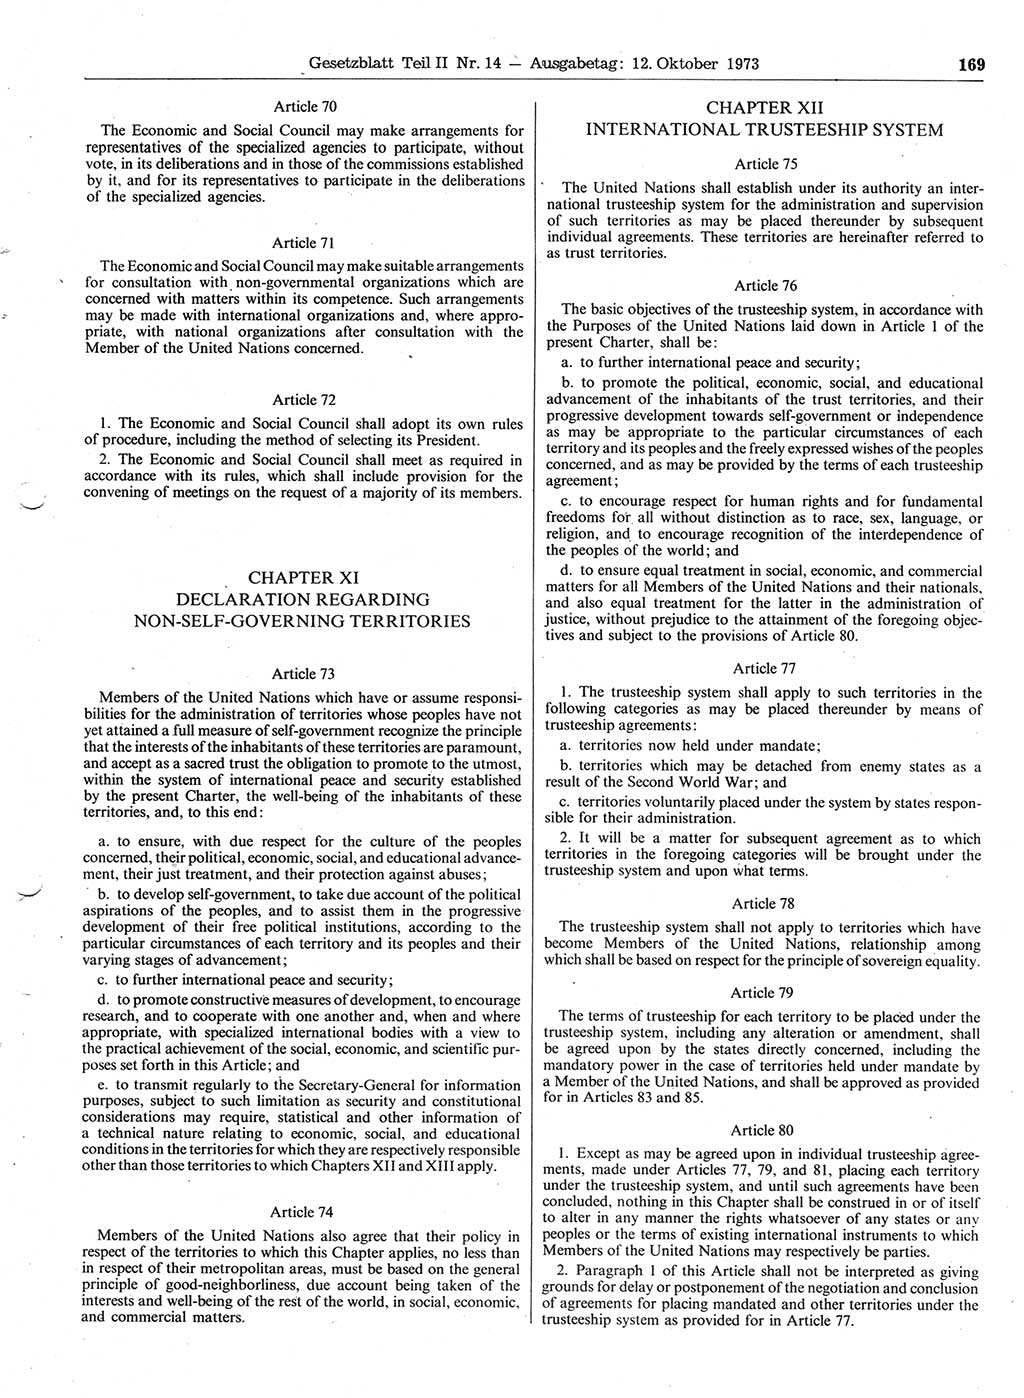 Gesetzblatt (GBl.) der Deutschen Demokratischen Republik (DDR) Teil ⅠⅠ 1973, Seite 169 (GBl. DDR ⅠⅠ 1973, S. 169)